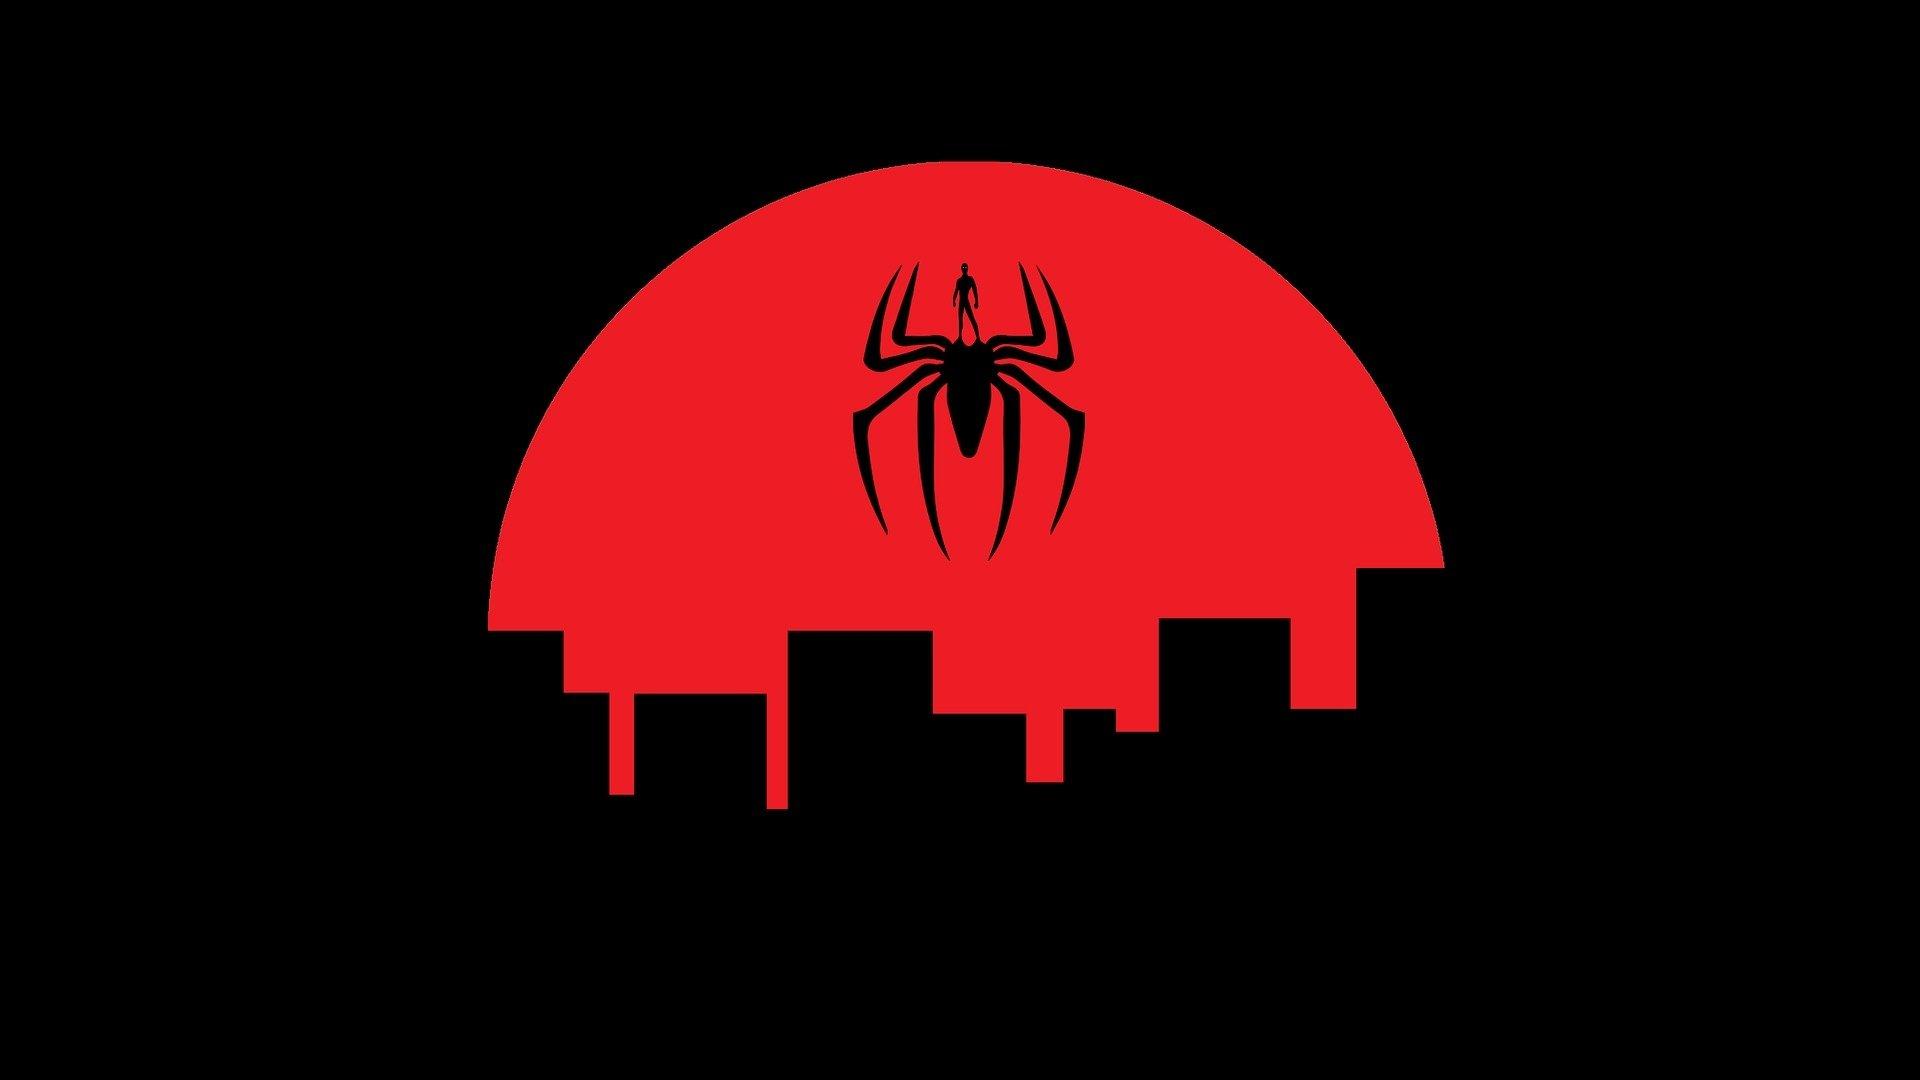 spiderman dark minimalist wallpaper